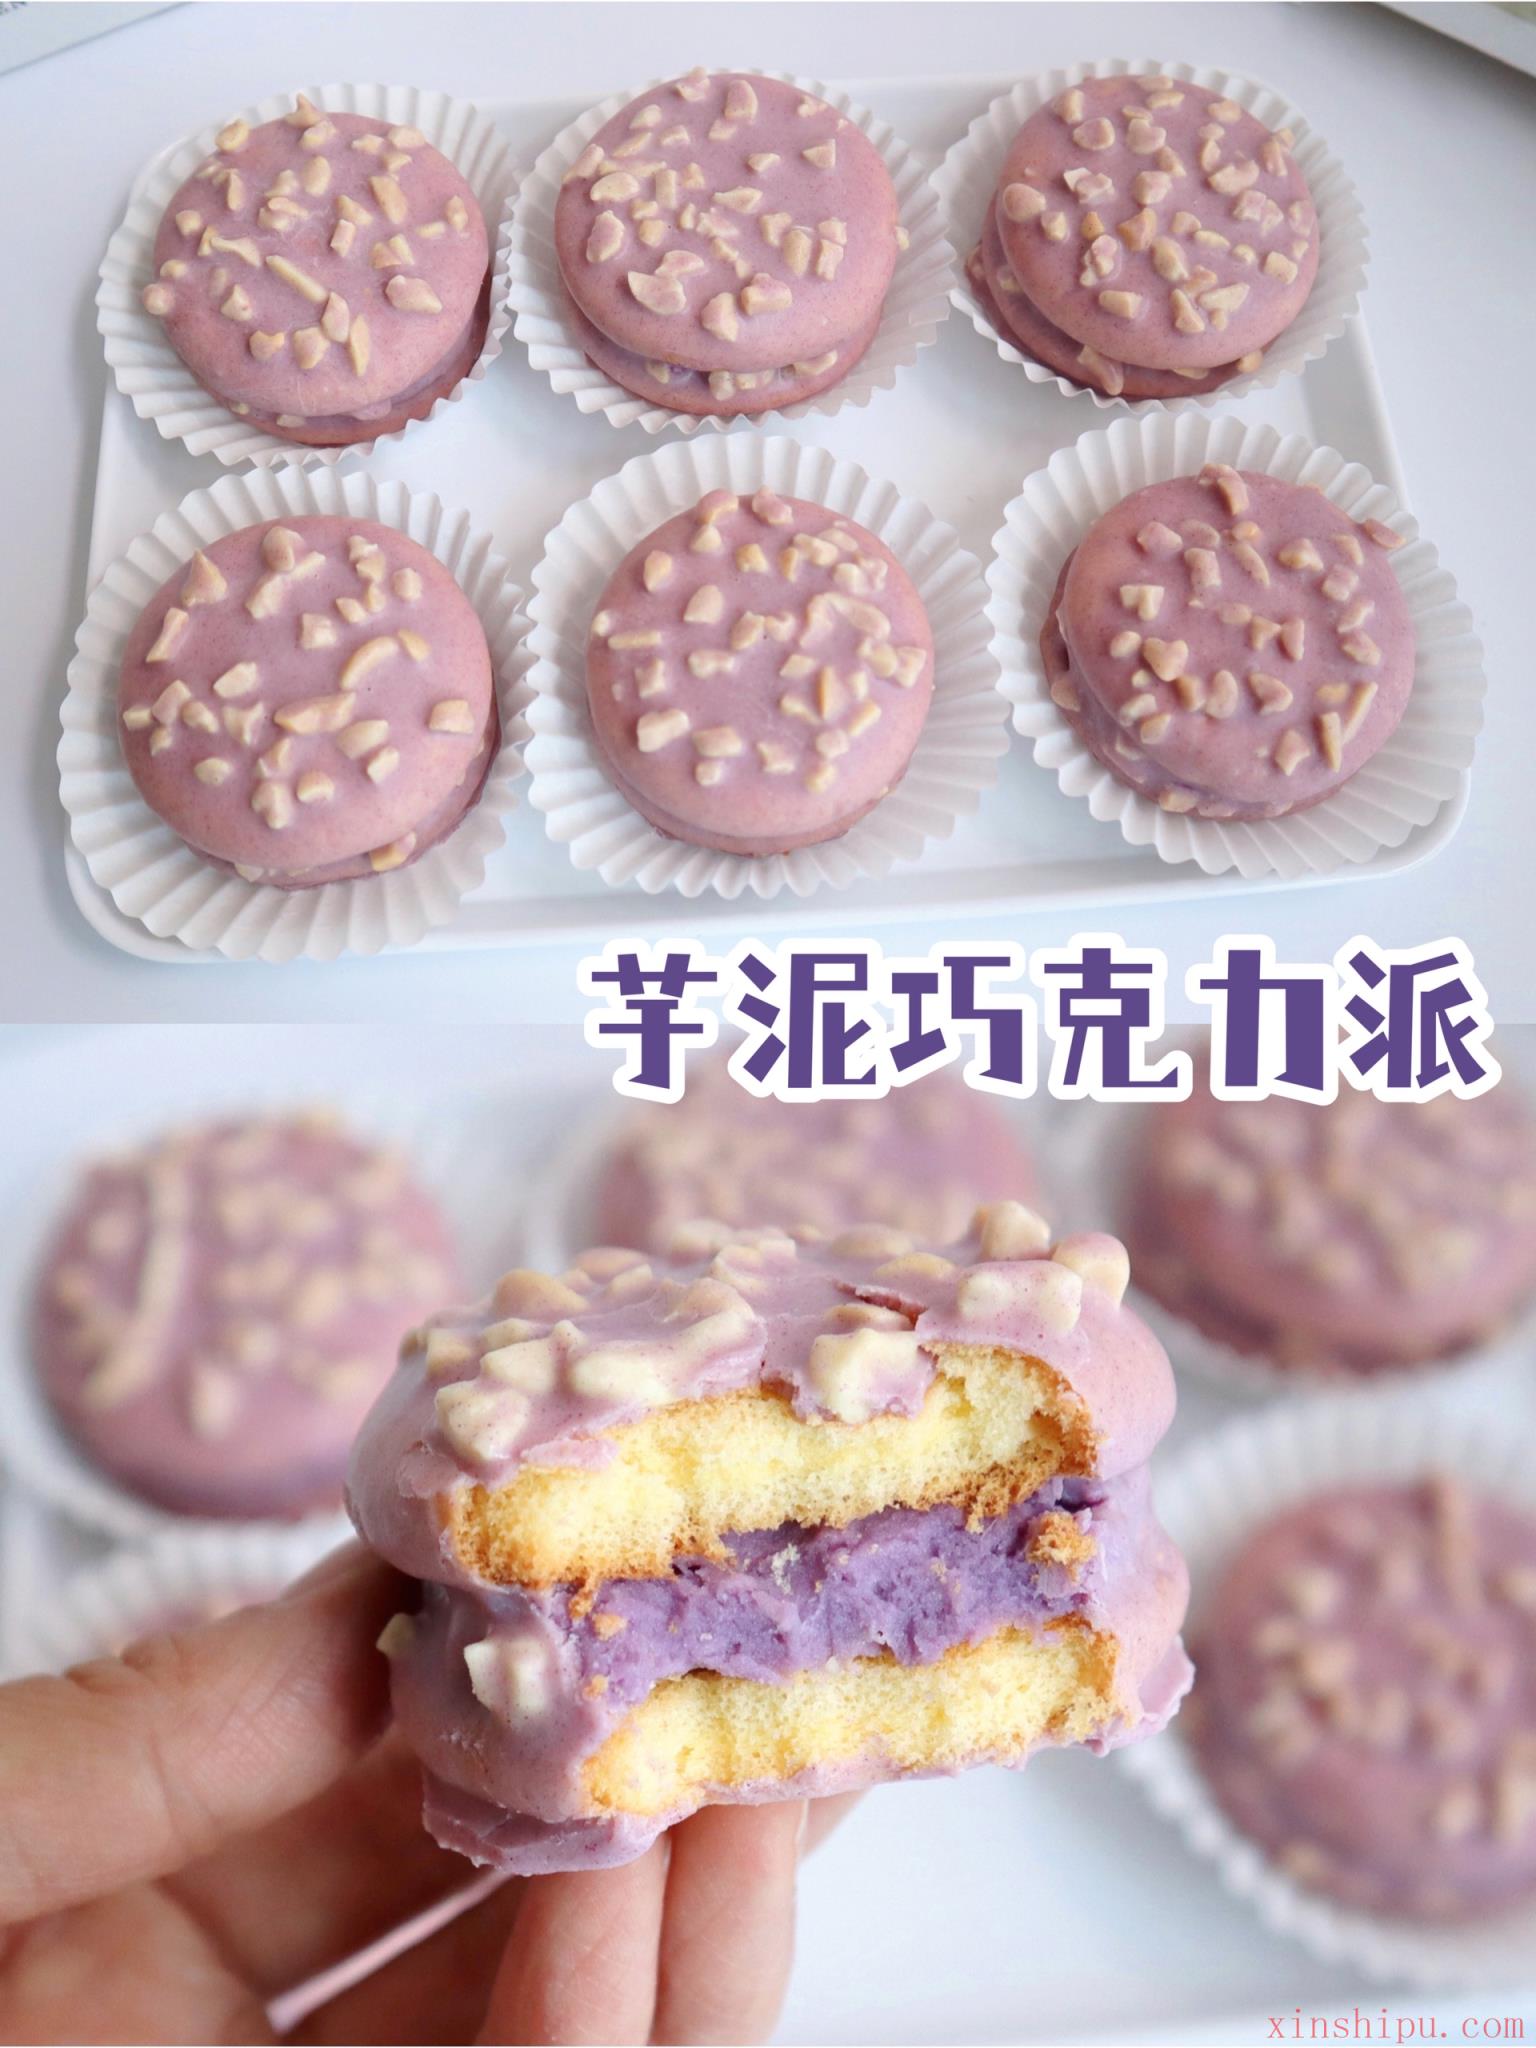 紫芋卷 – 長盈行食品有限公司